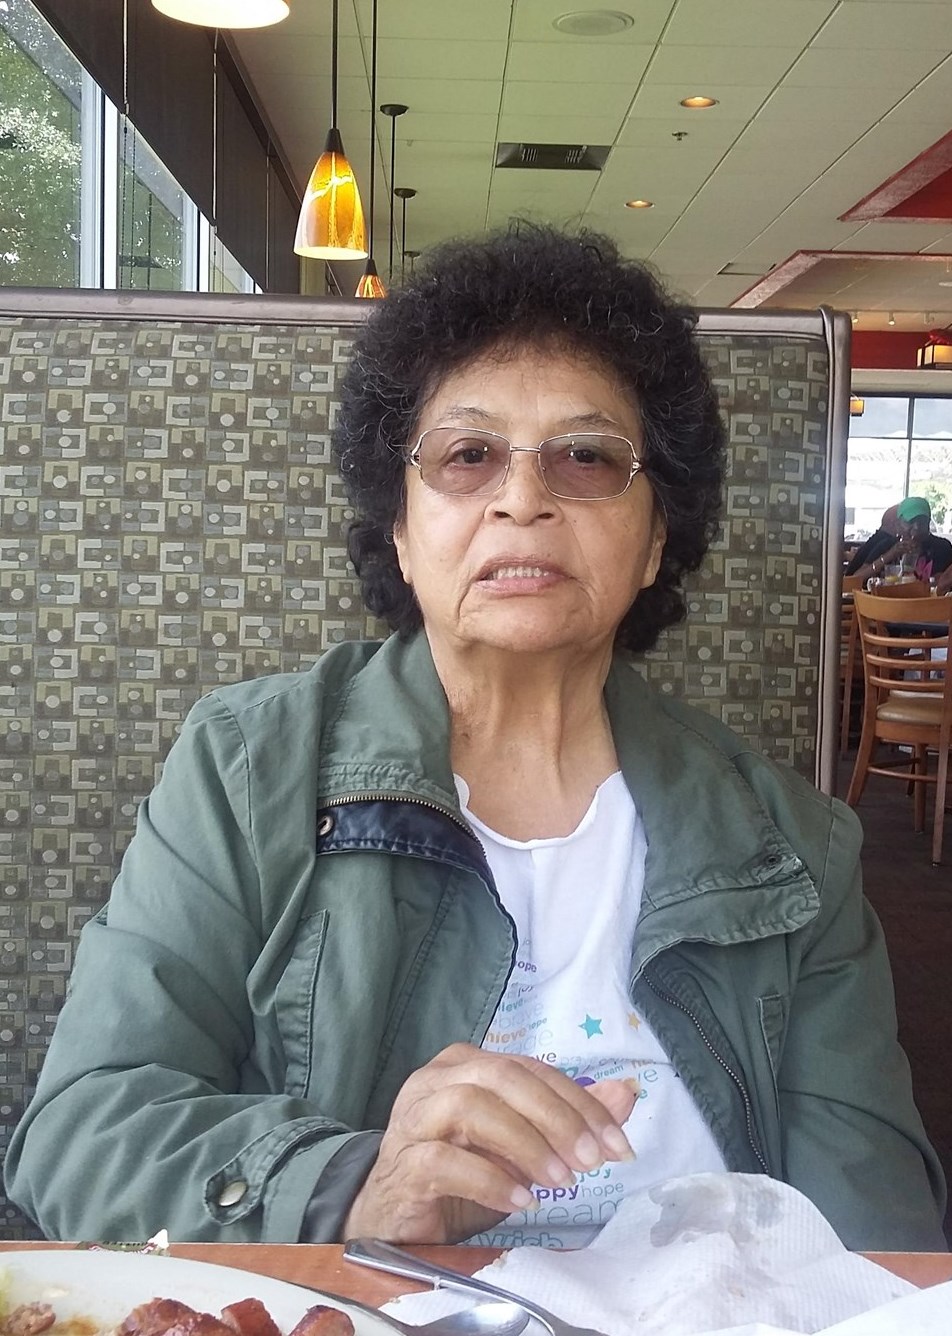 Obituary of Juana Vargas - 02/07/2020 - From the Family